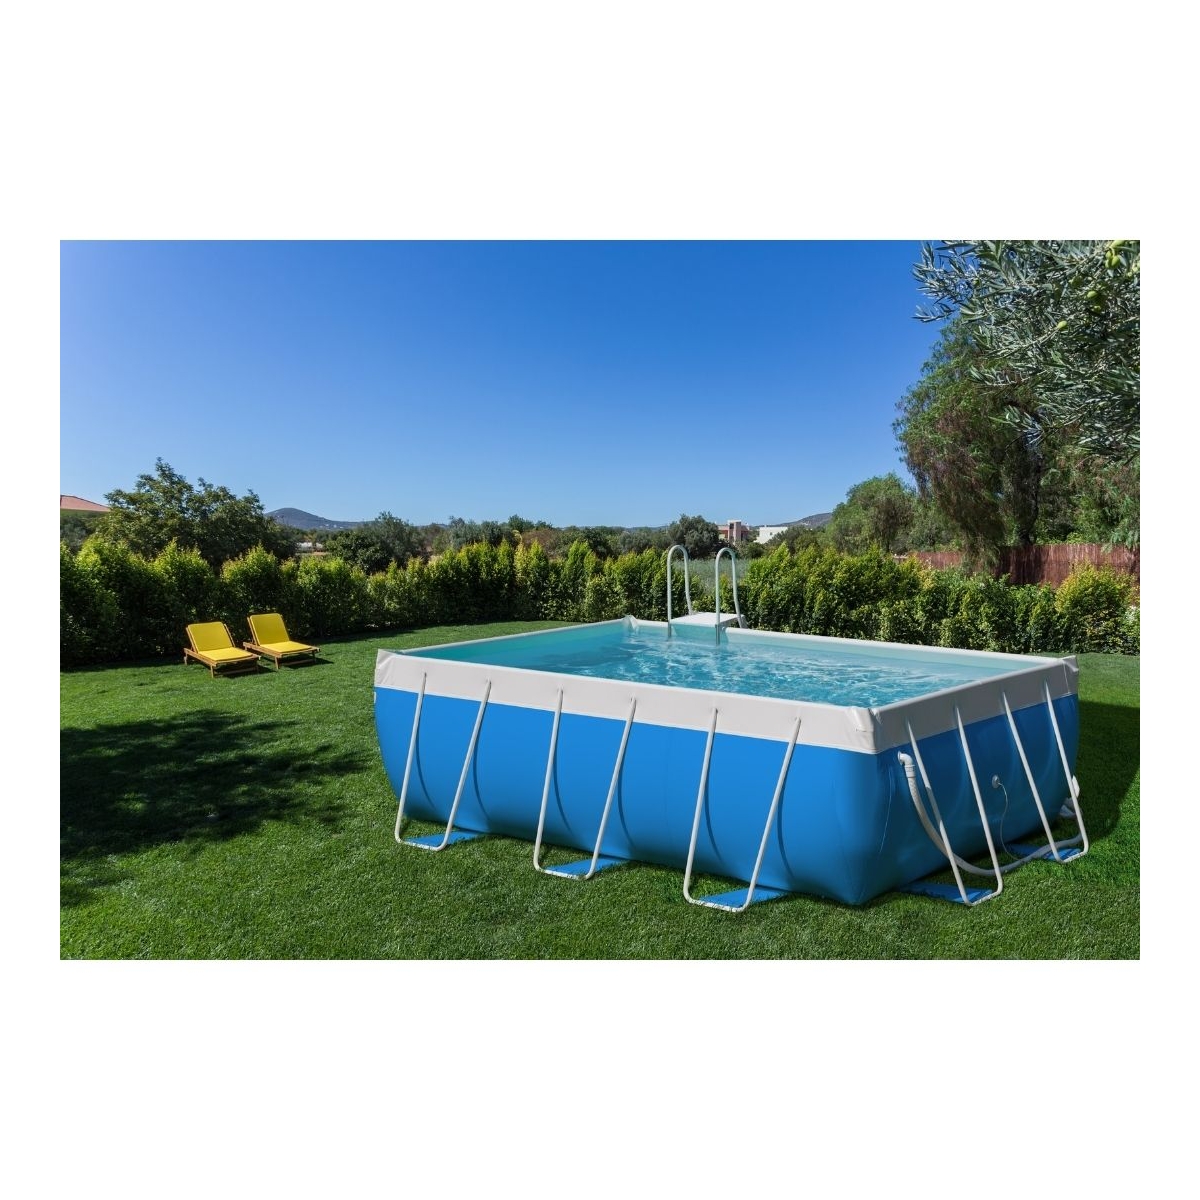 Laghetto Classic Original Pool